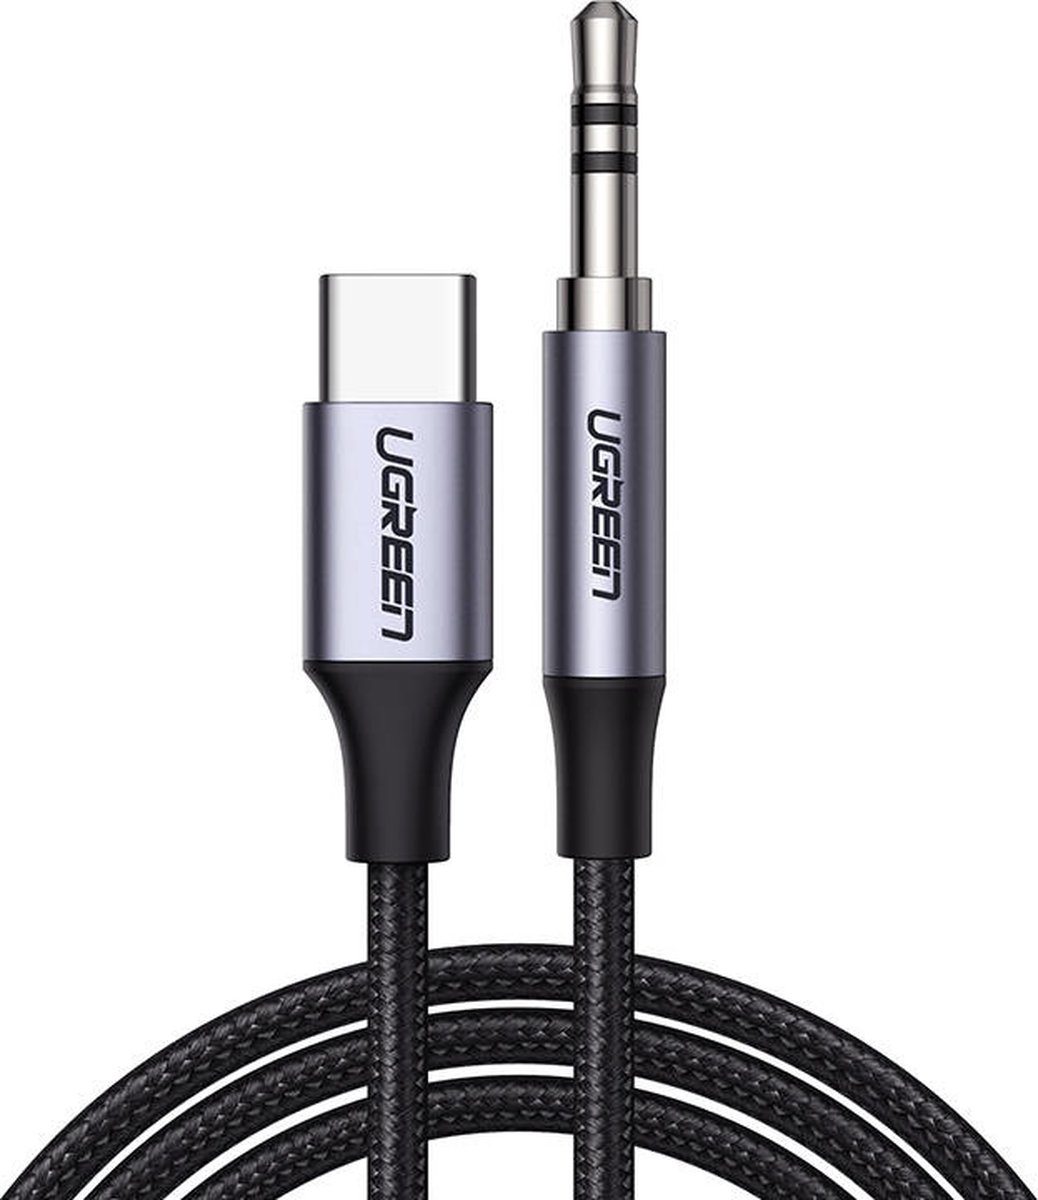 Ugreen Adaptateur USB-A vers Port Jack audio 3.5mm Clés USB